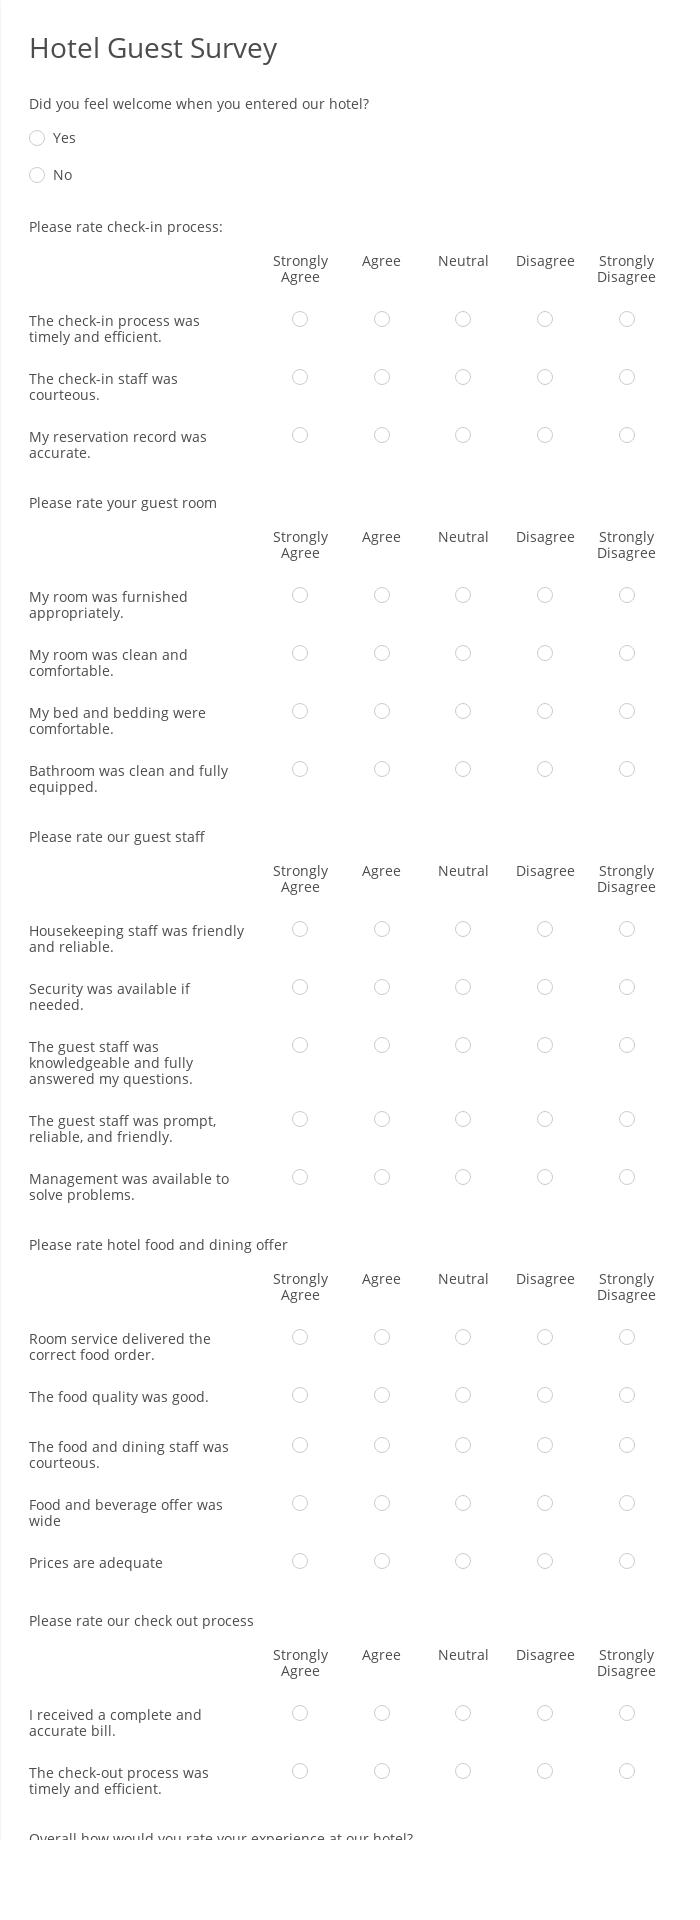 Hotel Guest Survey